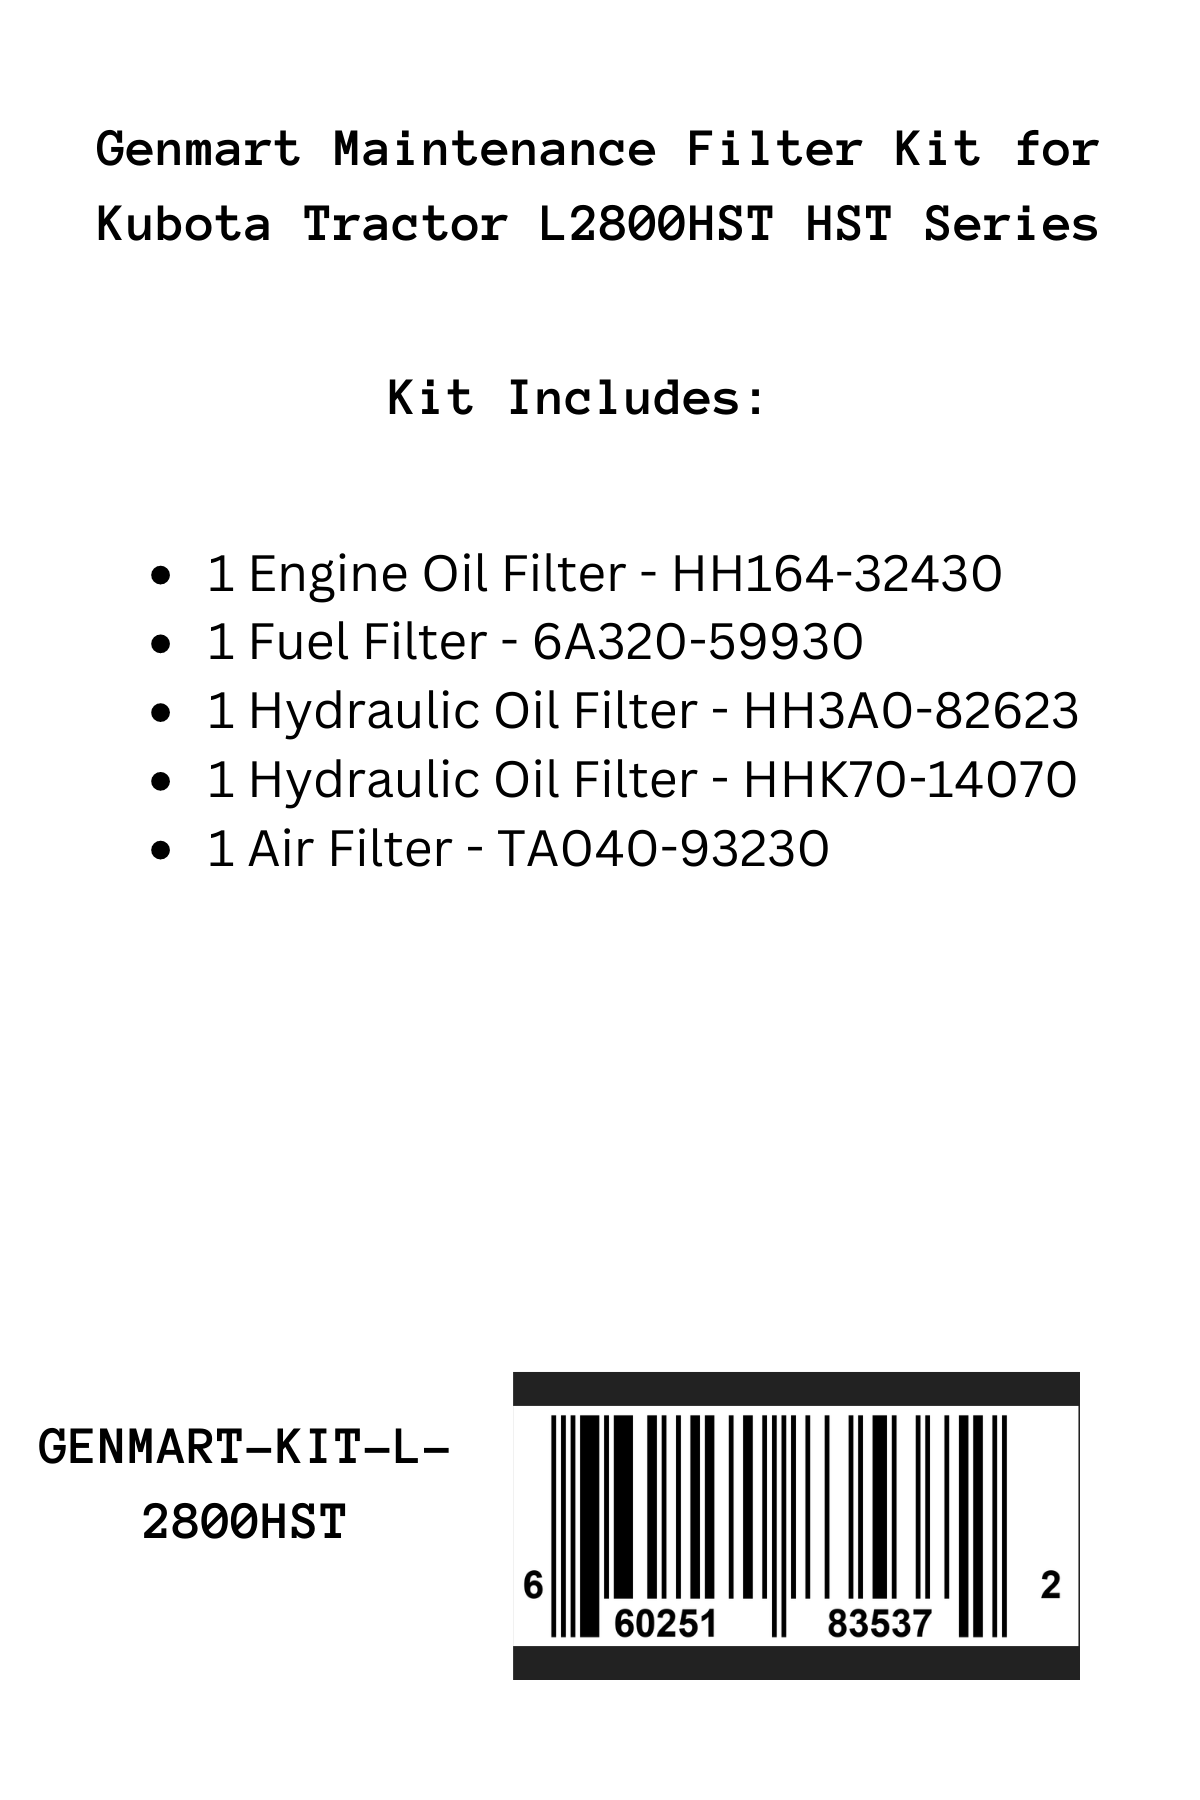 Genmart Maintenance Kit for Kubota Tractor L2800HST HST Series